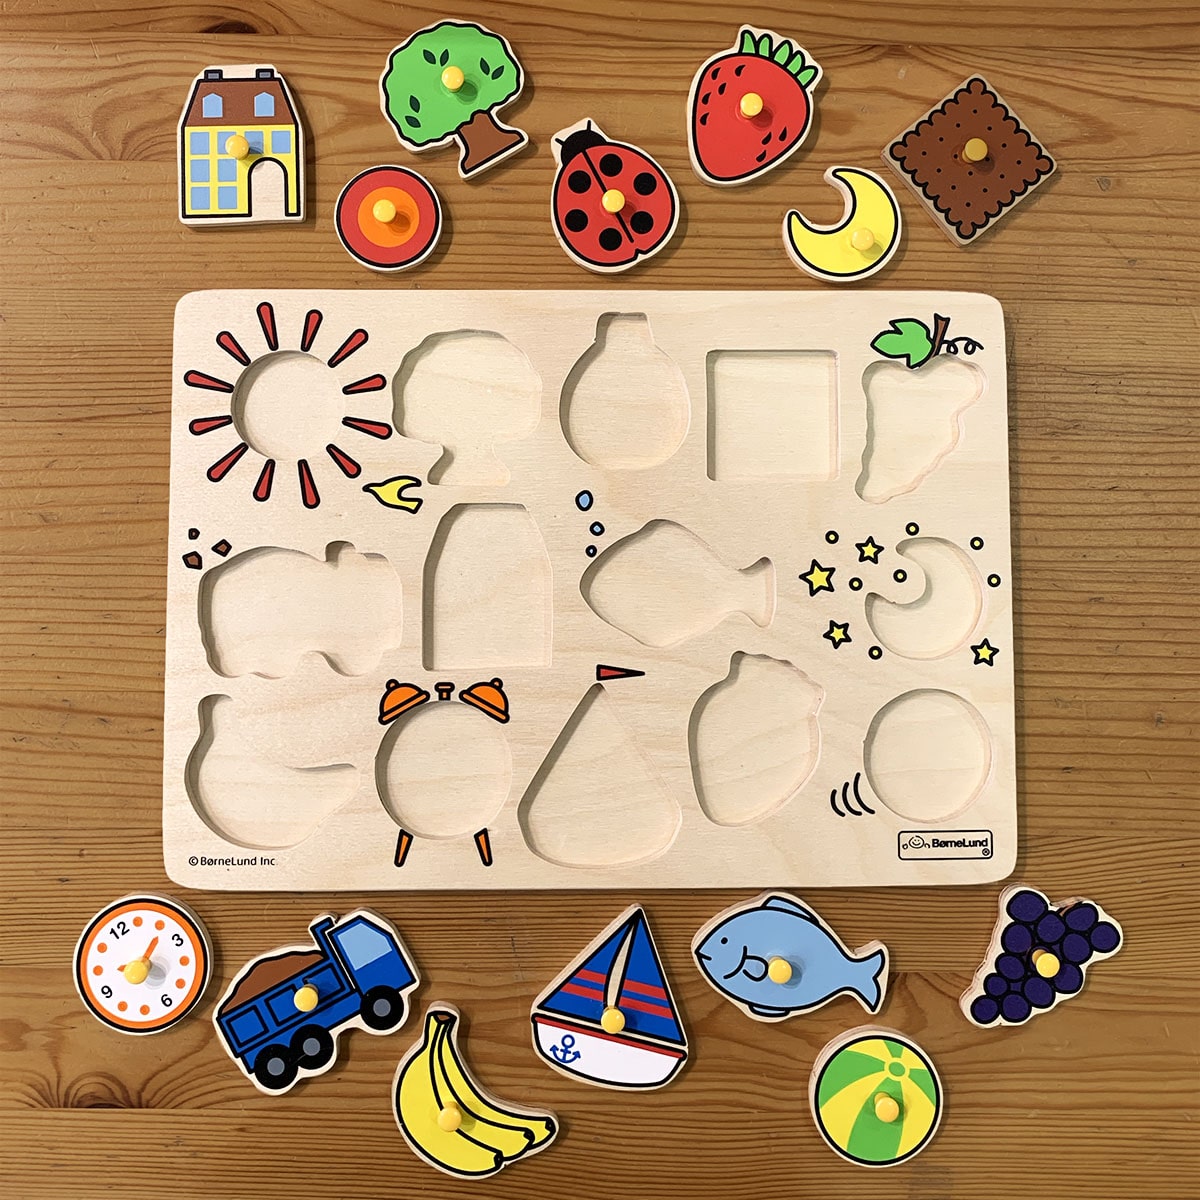 ピックアップパズル バラエティ: ボーネルンド オンラインショップ。世界中の知育玩具など、あそび道具がたくさん。0歳からのお子様へのプレゼントにも。